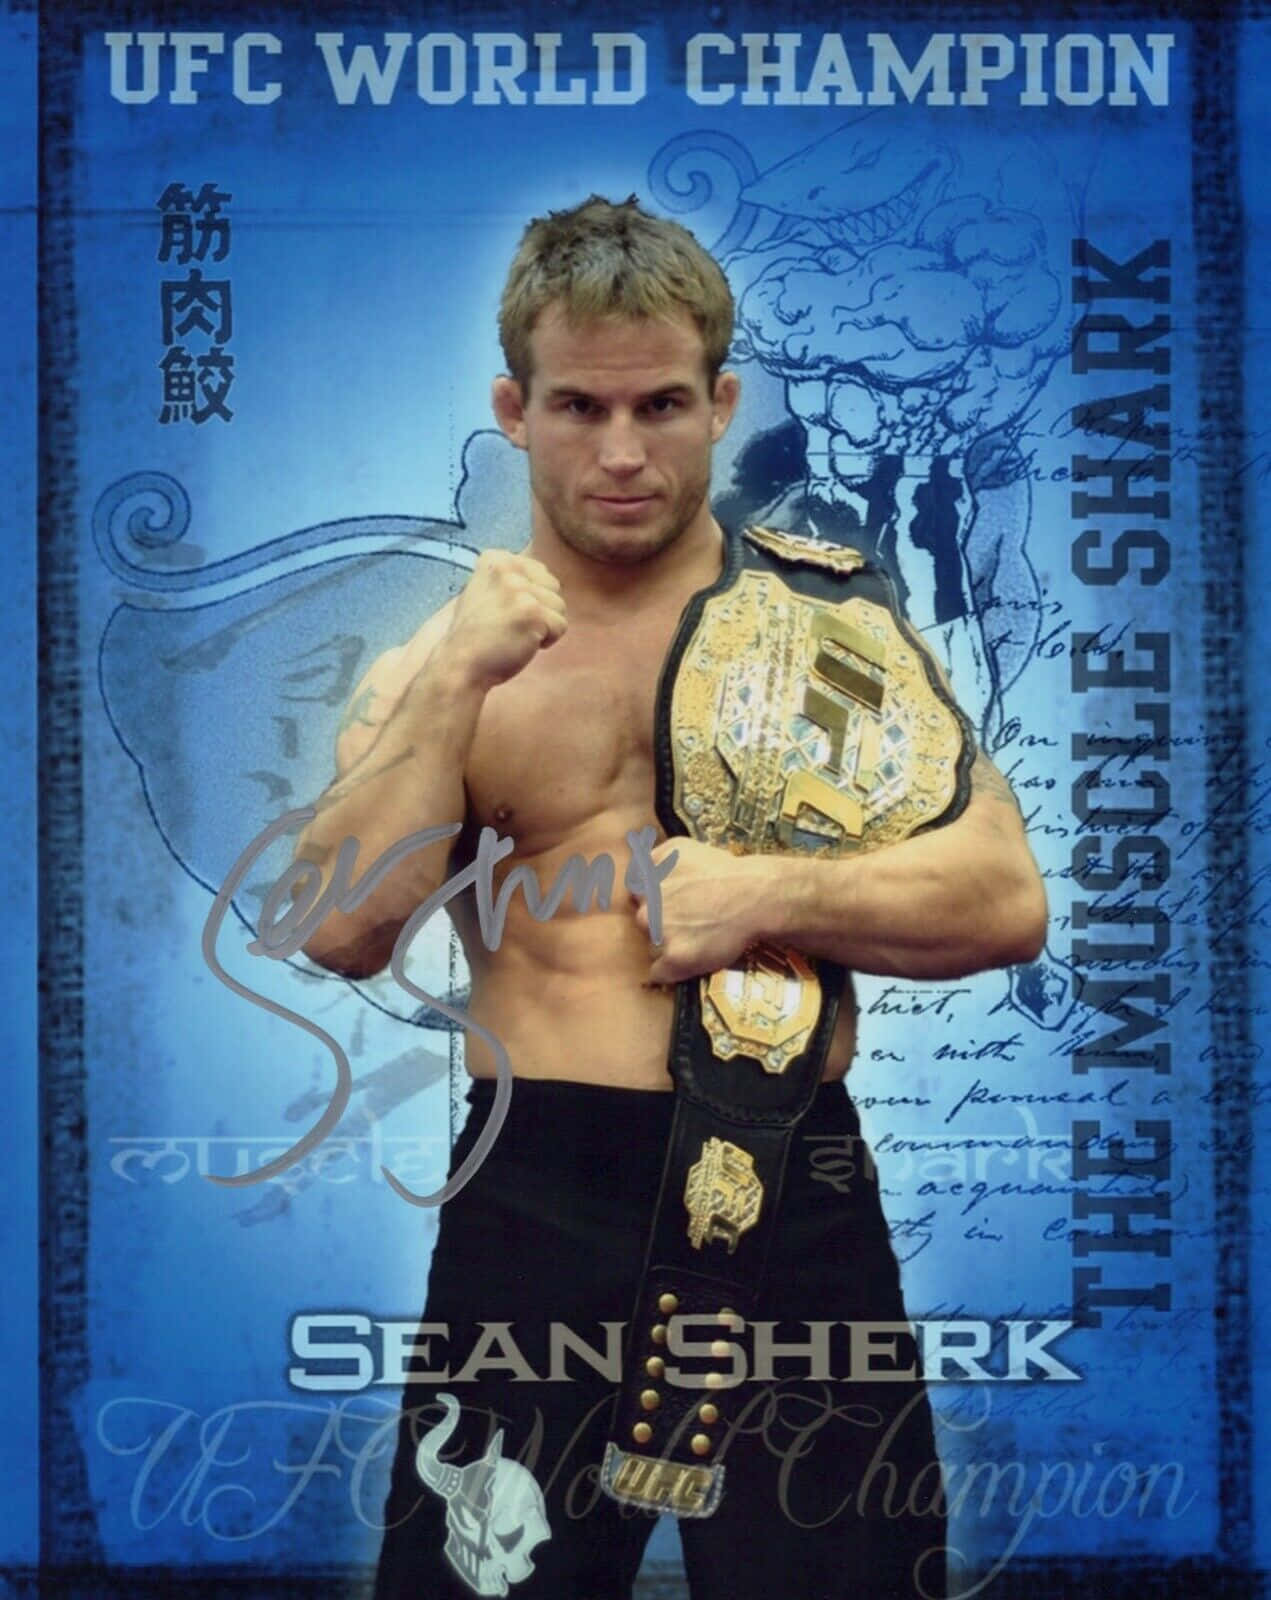 Former Ufc World Champion Sean Sherk Background